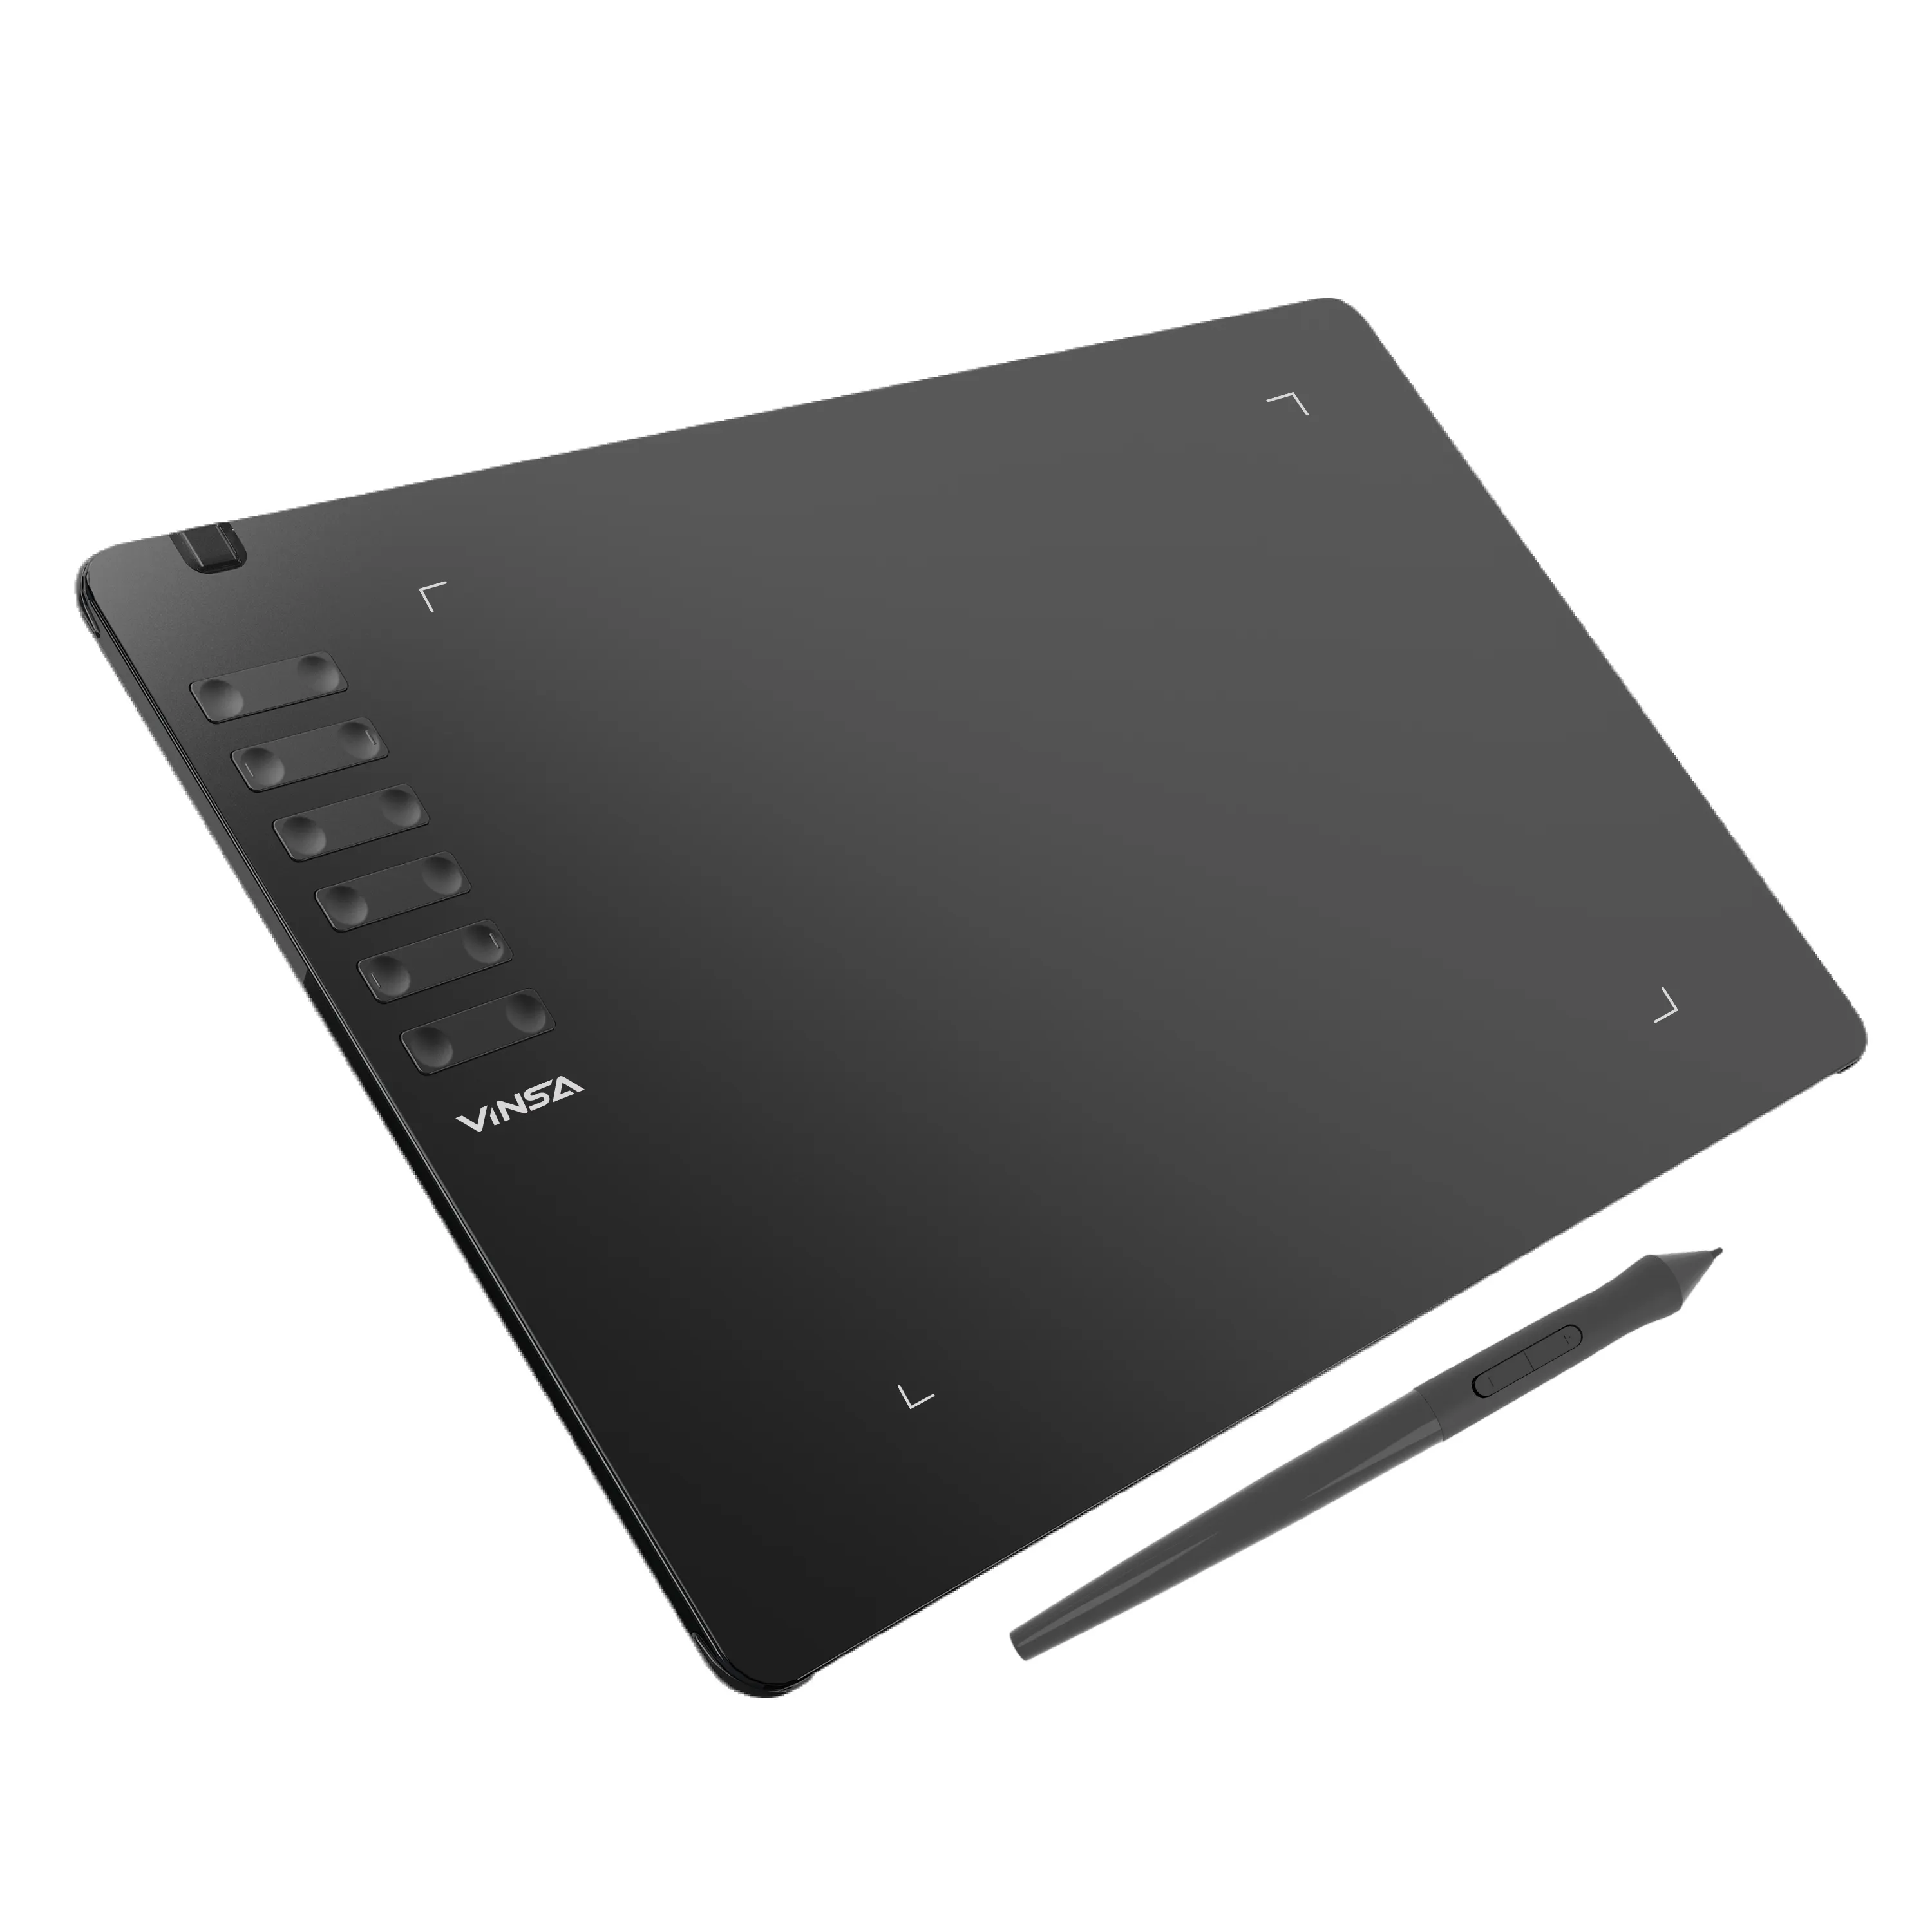 Новое прибытие! VINSA T1161 дизайн планшета высокого разрешения пассивный Emr Stylus графический планшет для рисования с цифровой ручкой